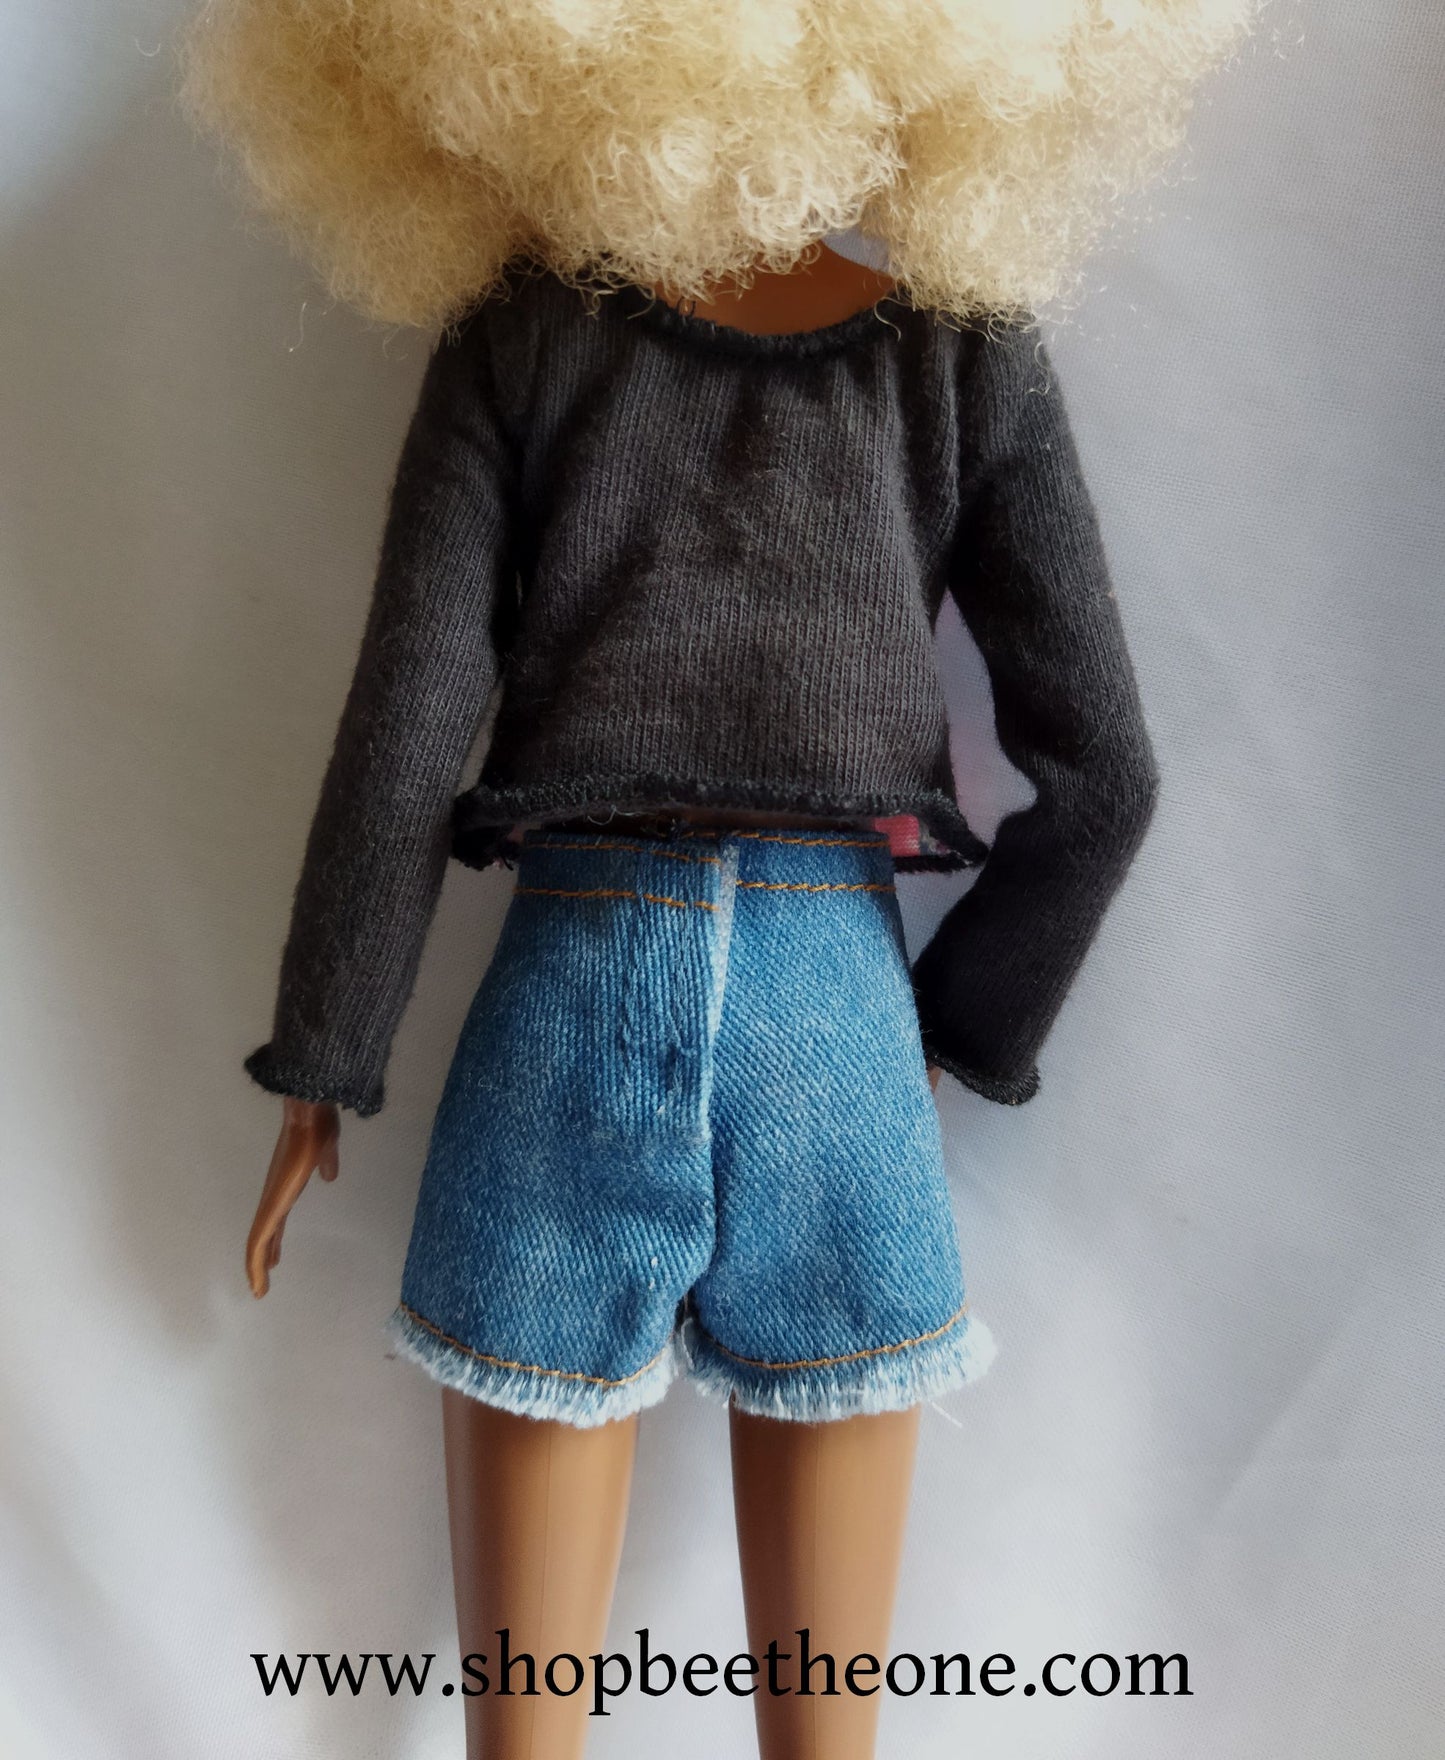 Barbie Fashionistas Tall n°33 - Mattel 2015 - Vêtements